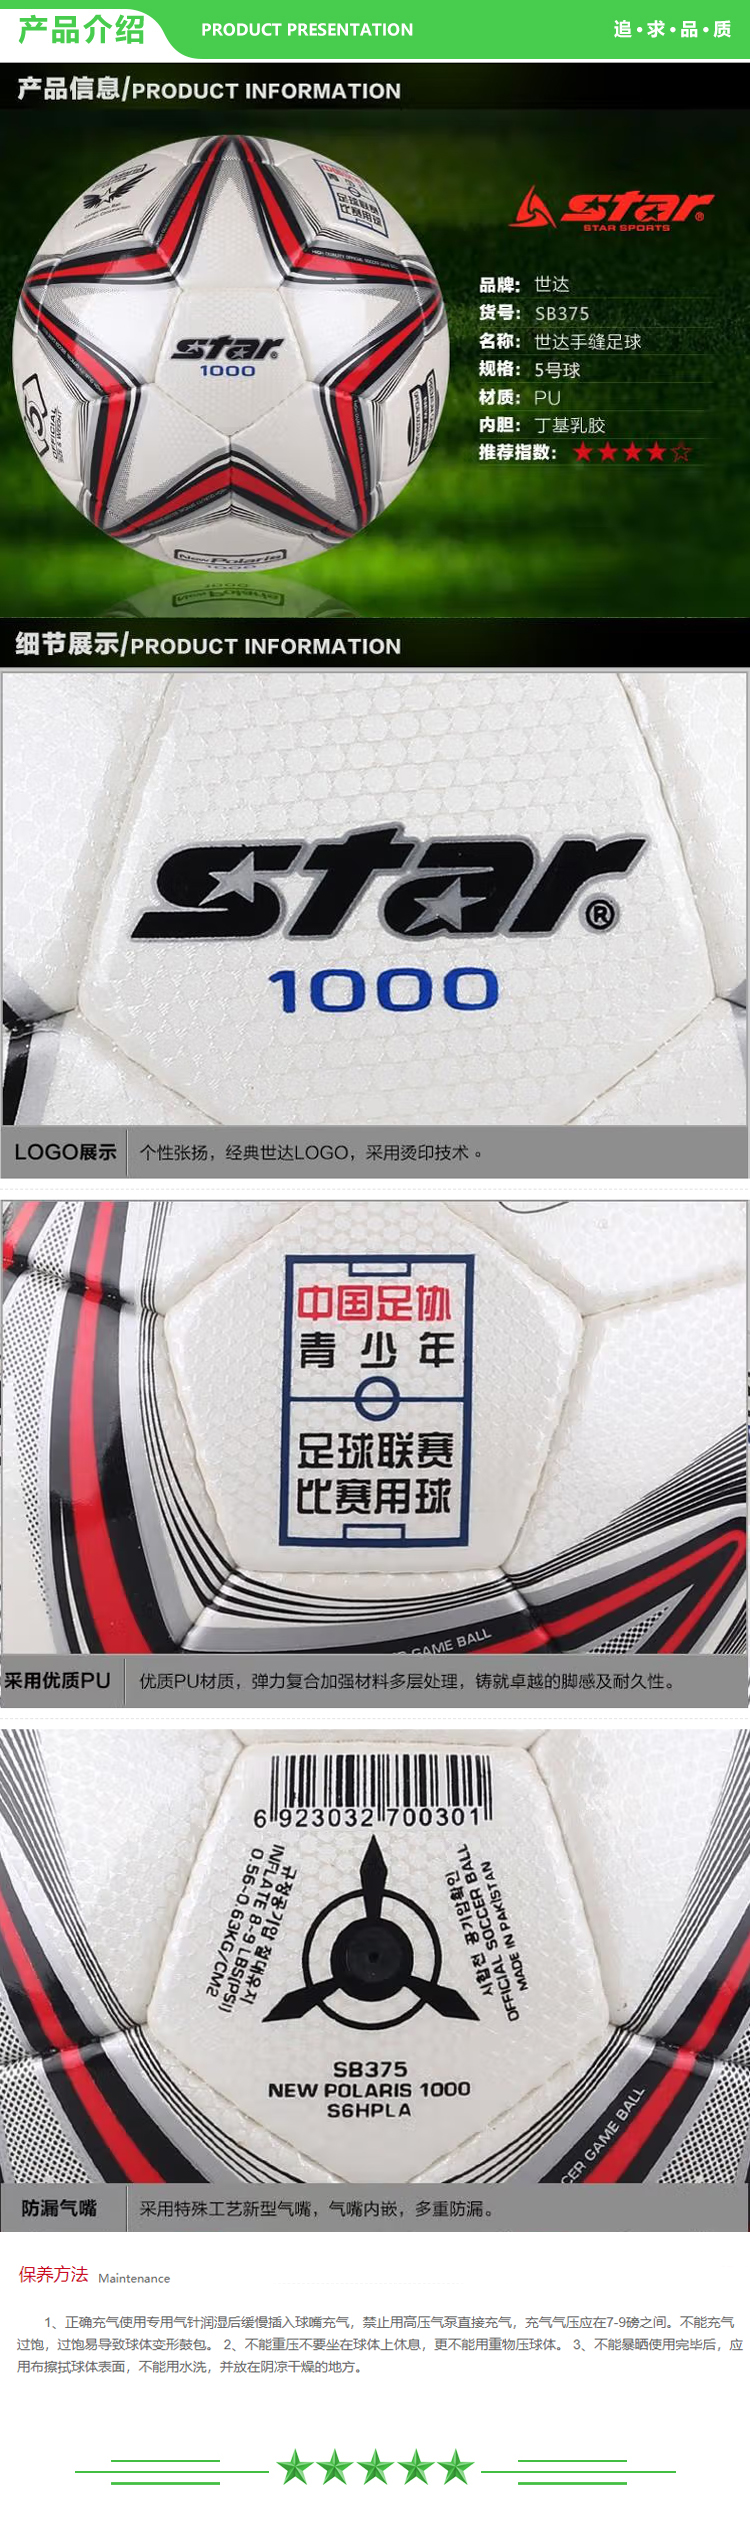 世达 star SB375 超纤革手缝 足球 青少年足球联赛指定用球  .jpg